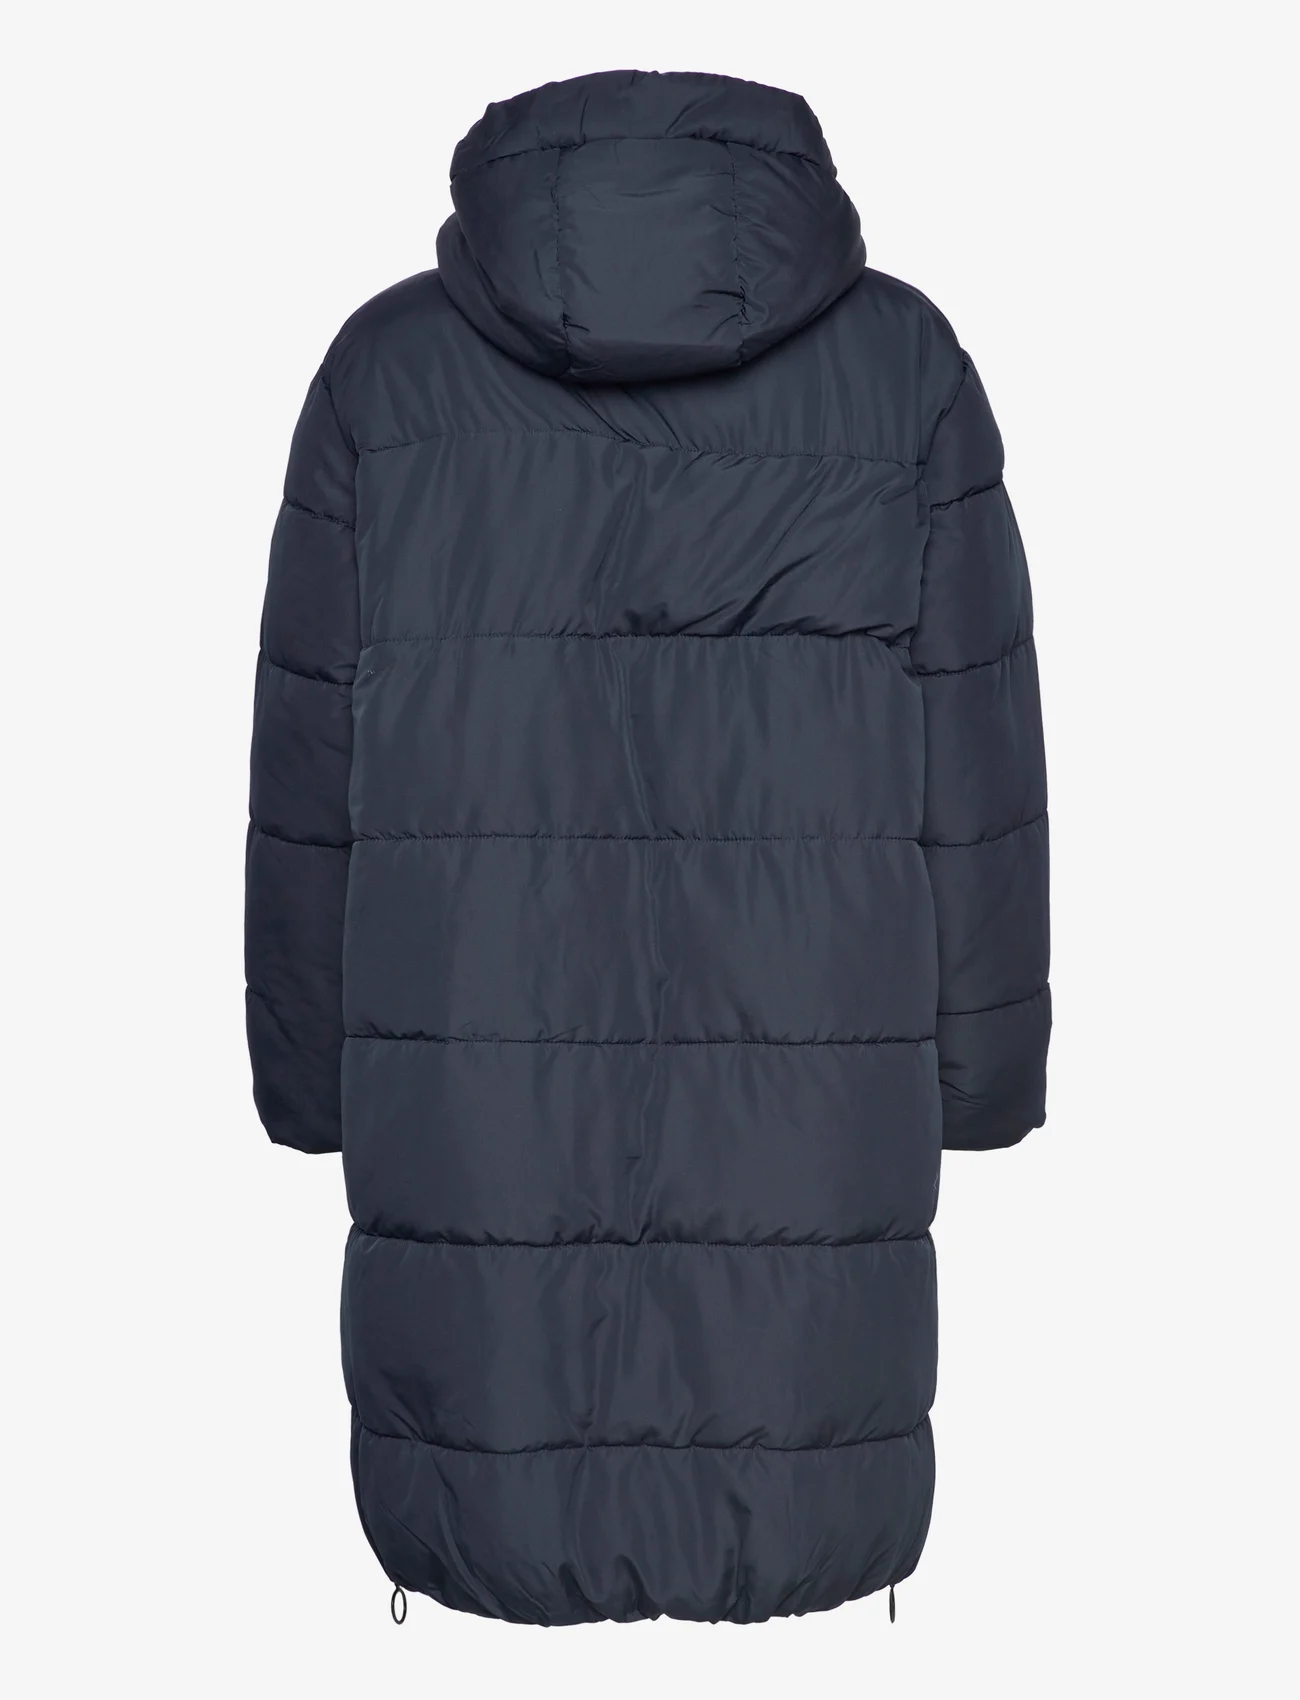 FREE/QUENT Fqturtle-jacket - 799 kr. Køb Dynefrakke FREE/QUENT online på Boozt.com. Hurtig levering & nem retur